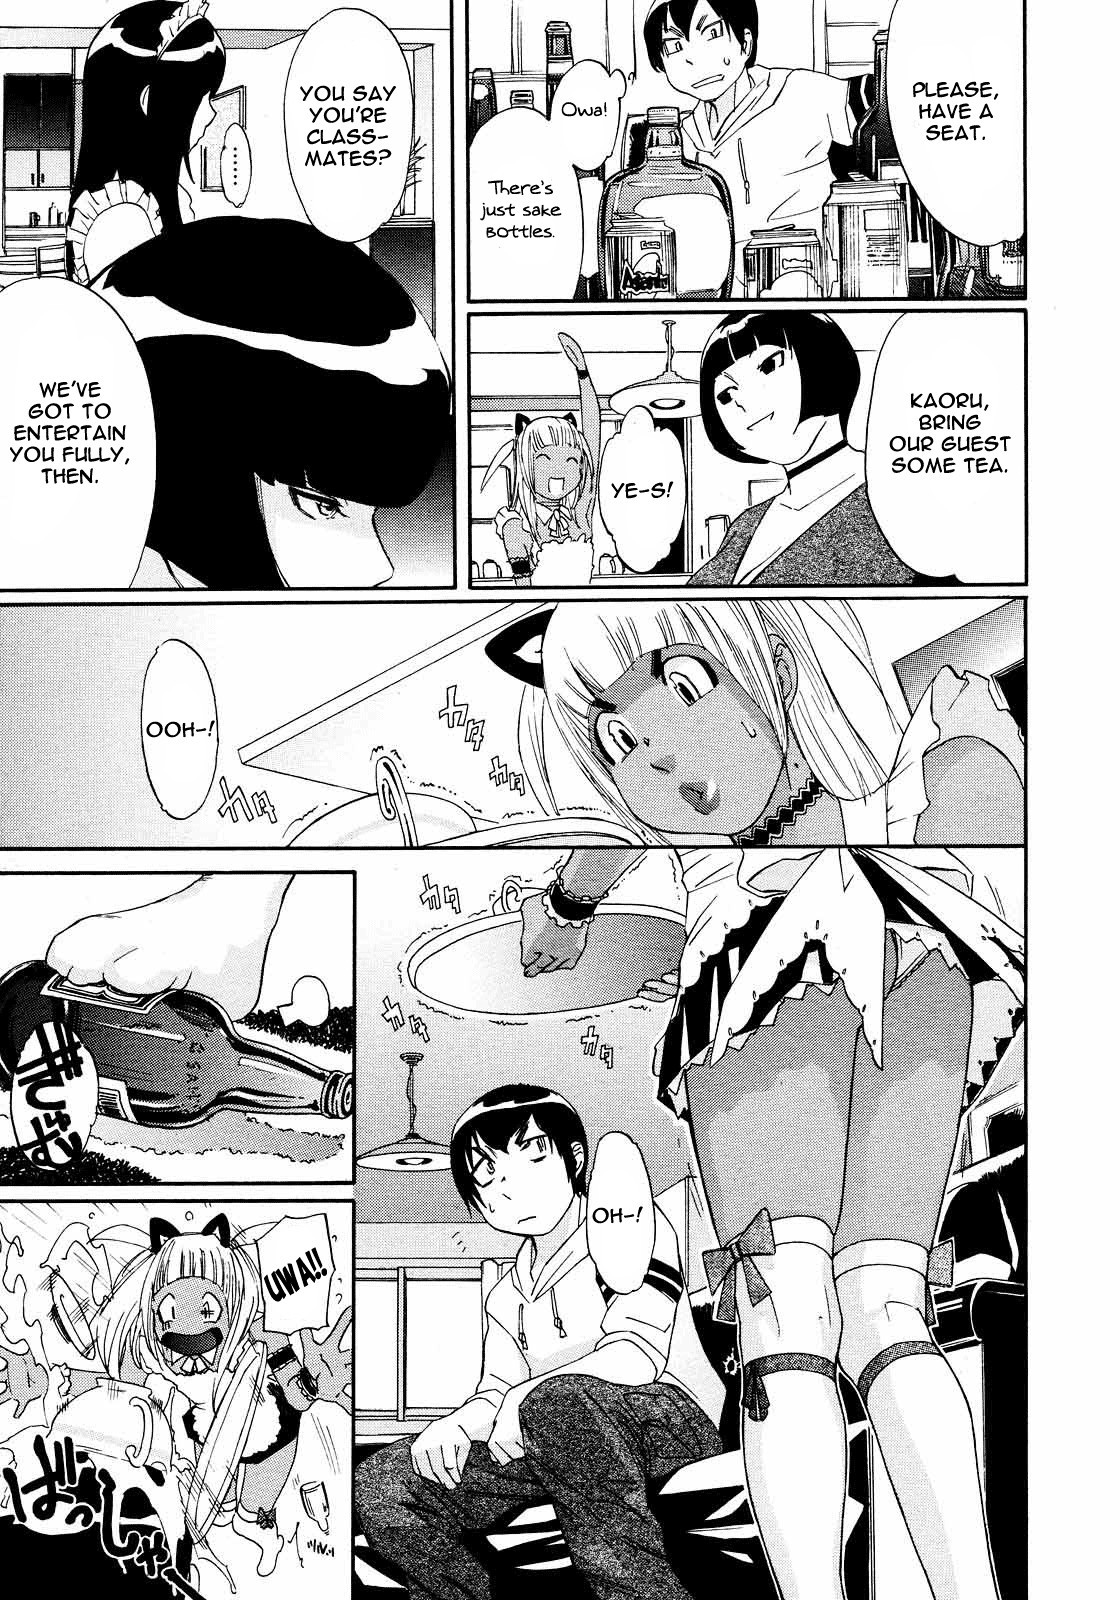 PM03:40 Takuhai Hiyori. 6 hentai manga